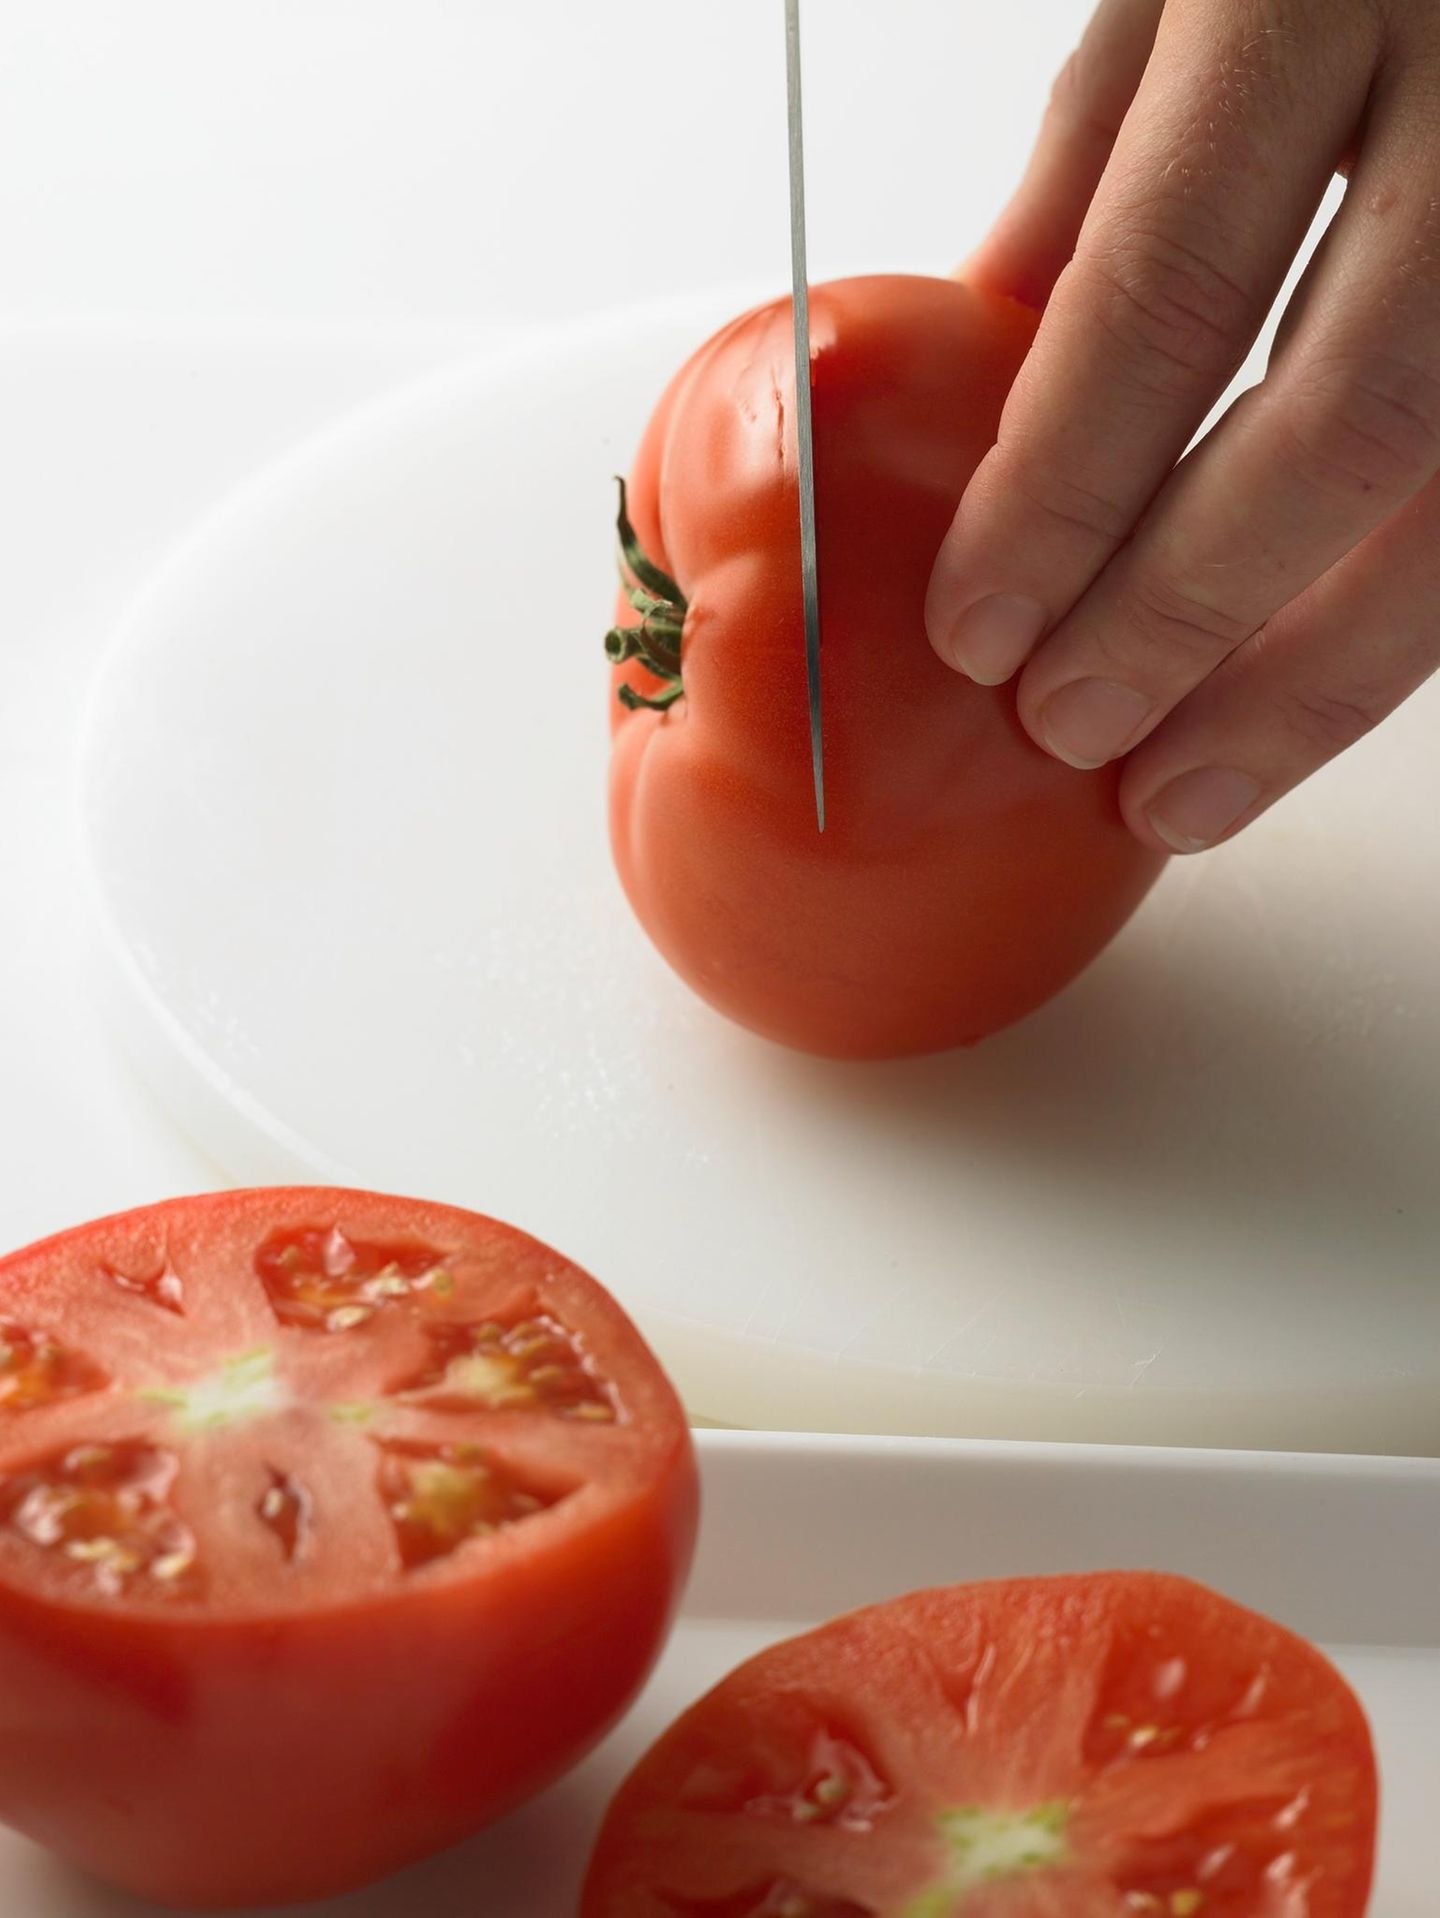 Tomaten putzen und aufschneiden